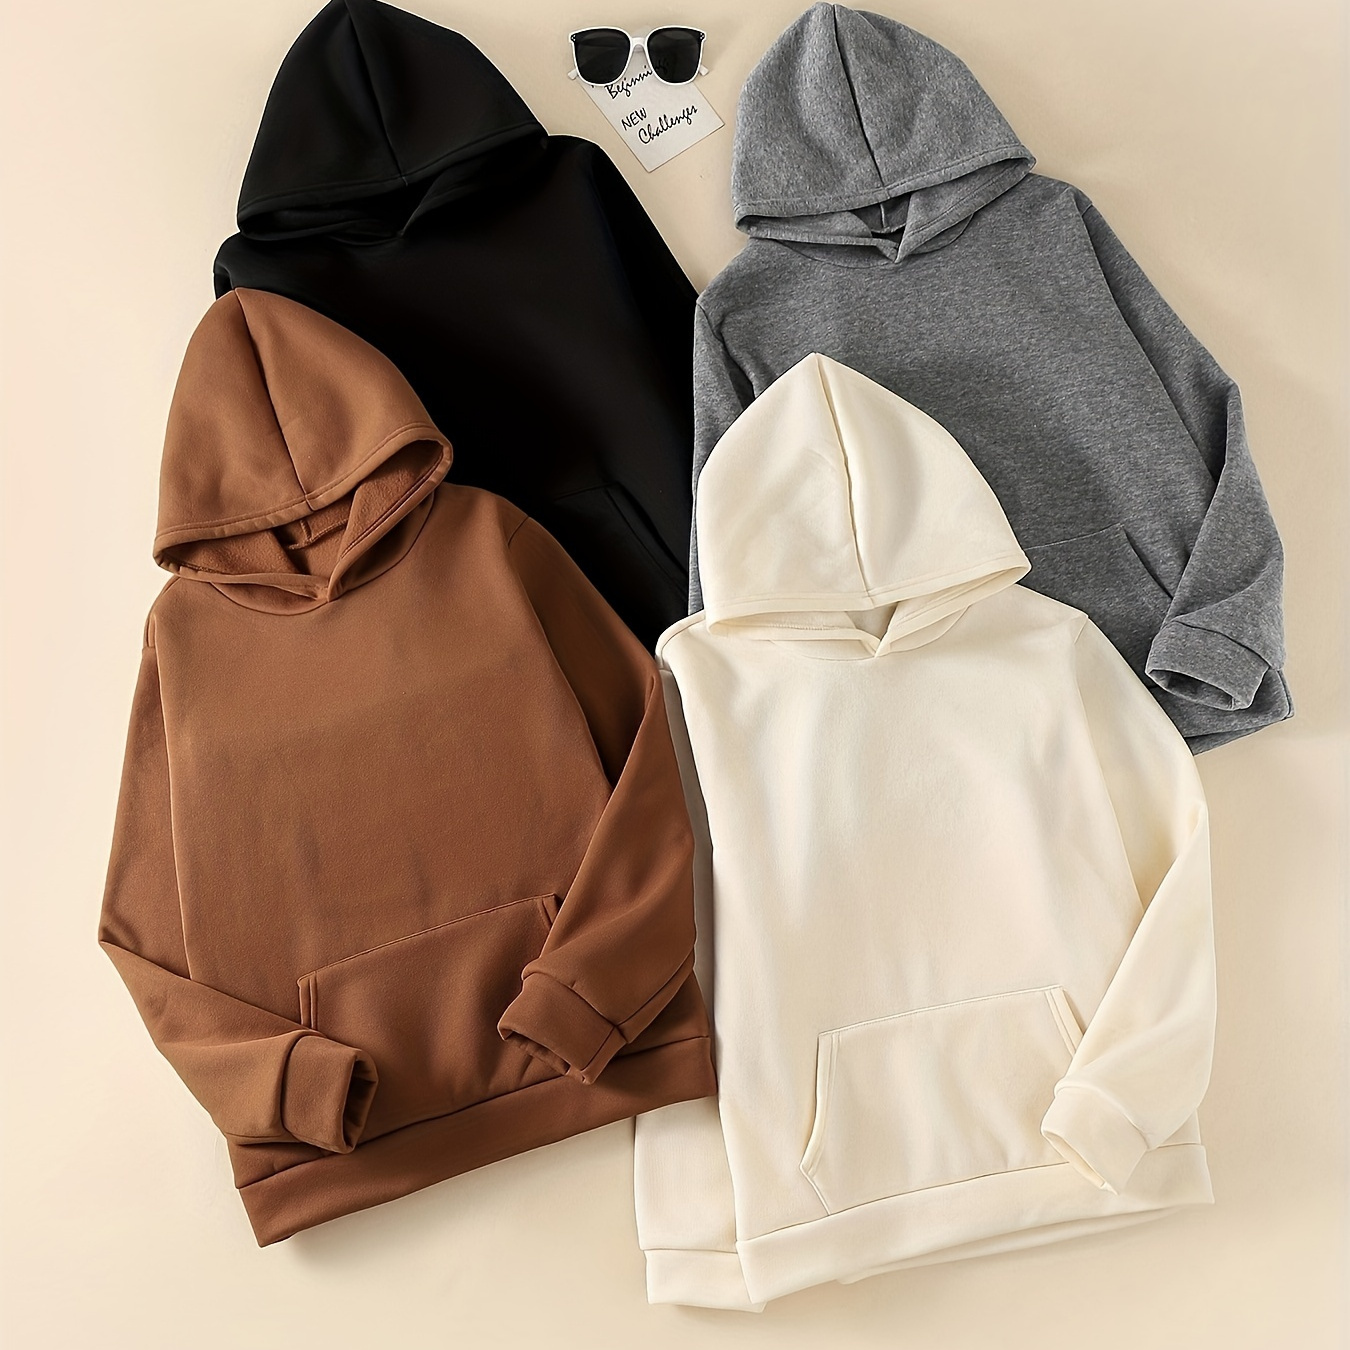 Casual Hoodies 4 Pack, Long Sleeve Solid Drawstring Hoodie, Women's Clothing